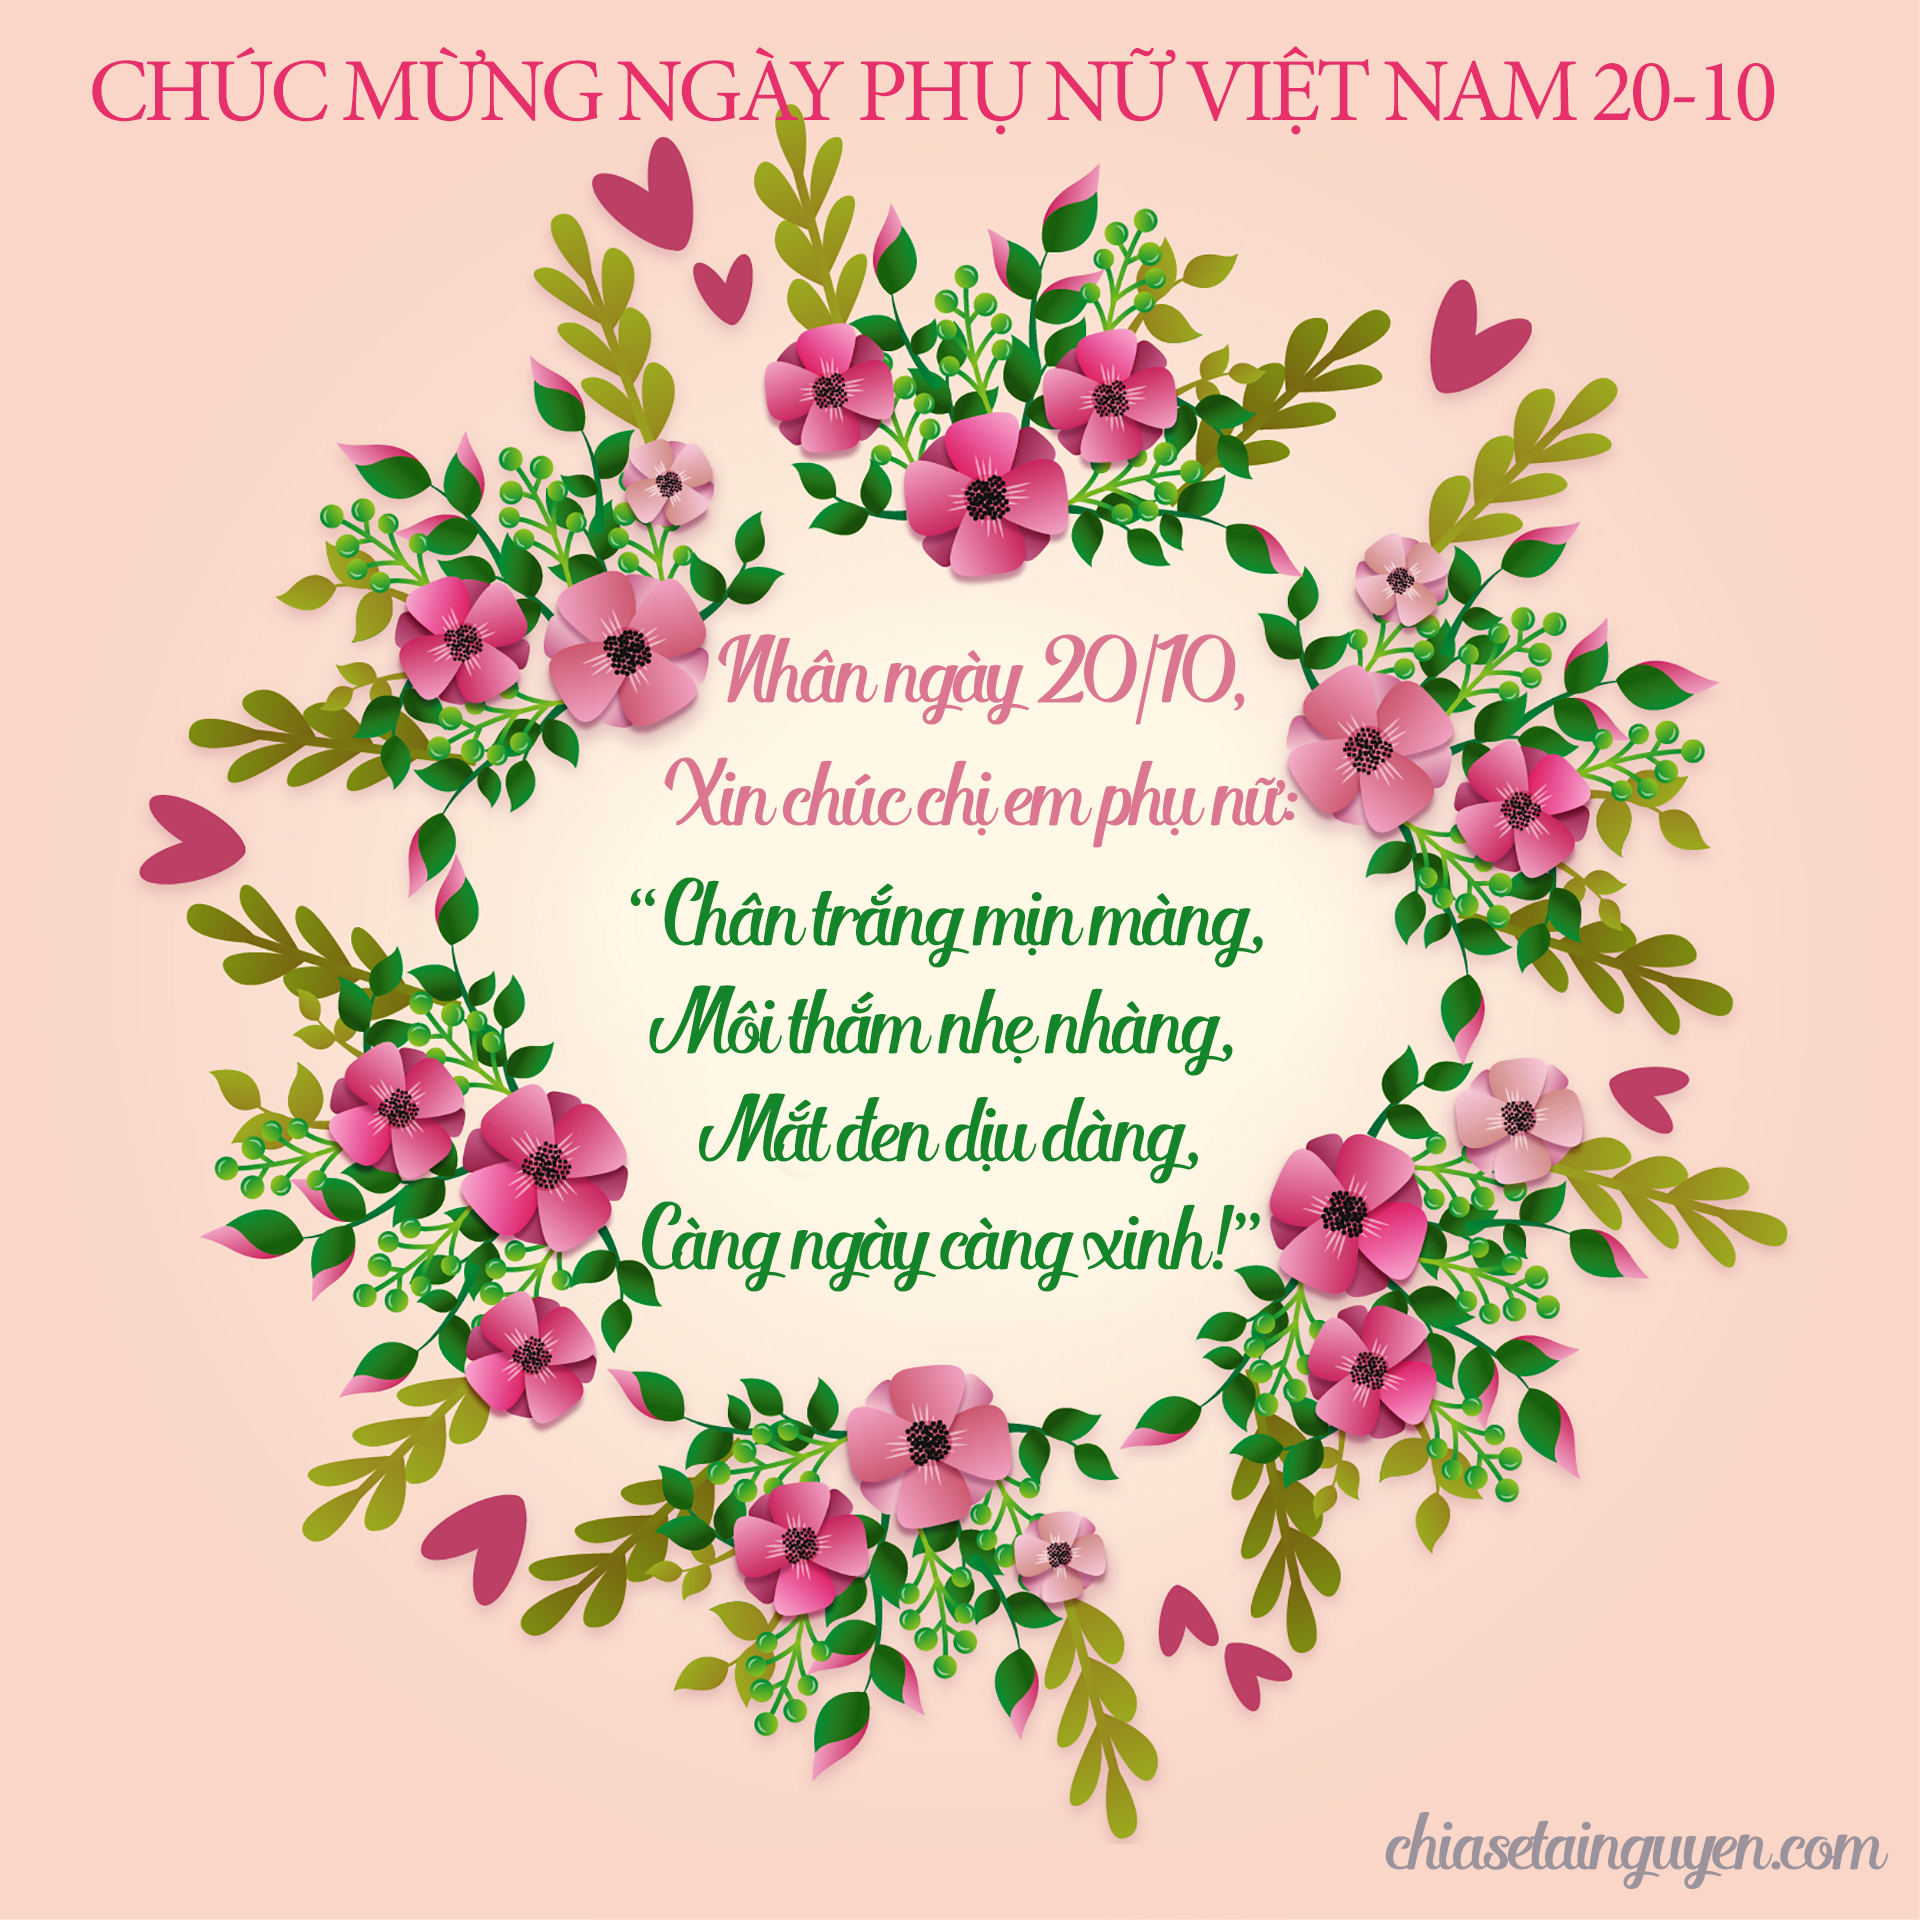 Ngày Phụ nữ Việt Nam là dịp để nàng được nhận những lời chúc tốt đẹp nhất từ những người thân yêu. Cùng bày tỏ tình cảm qua những tấm thiệp 20/10 đẹp mắt và ý nghĩa chính từ chúng tôi.